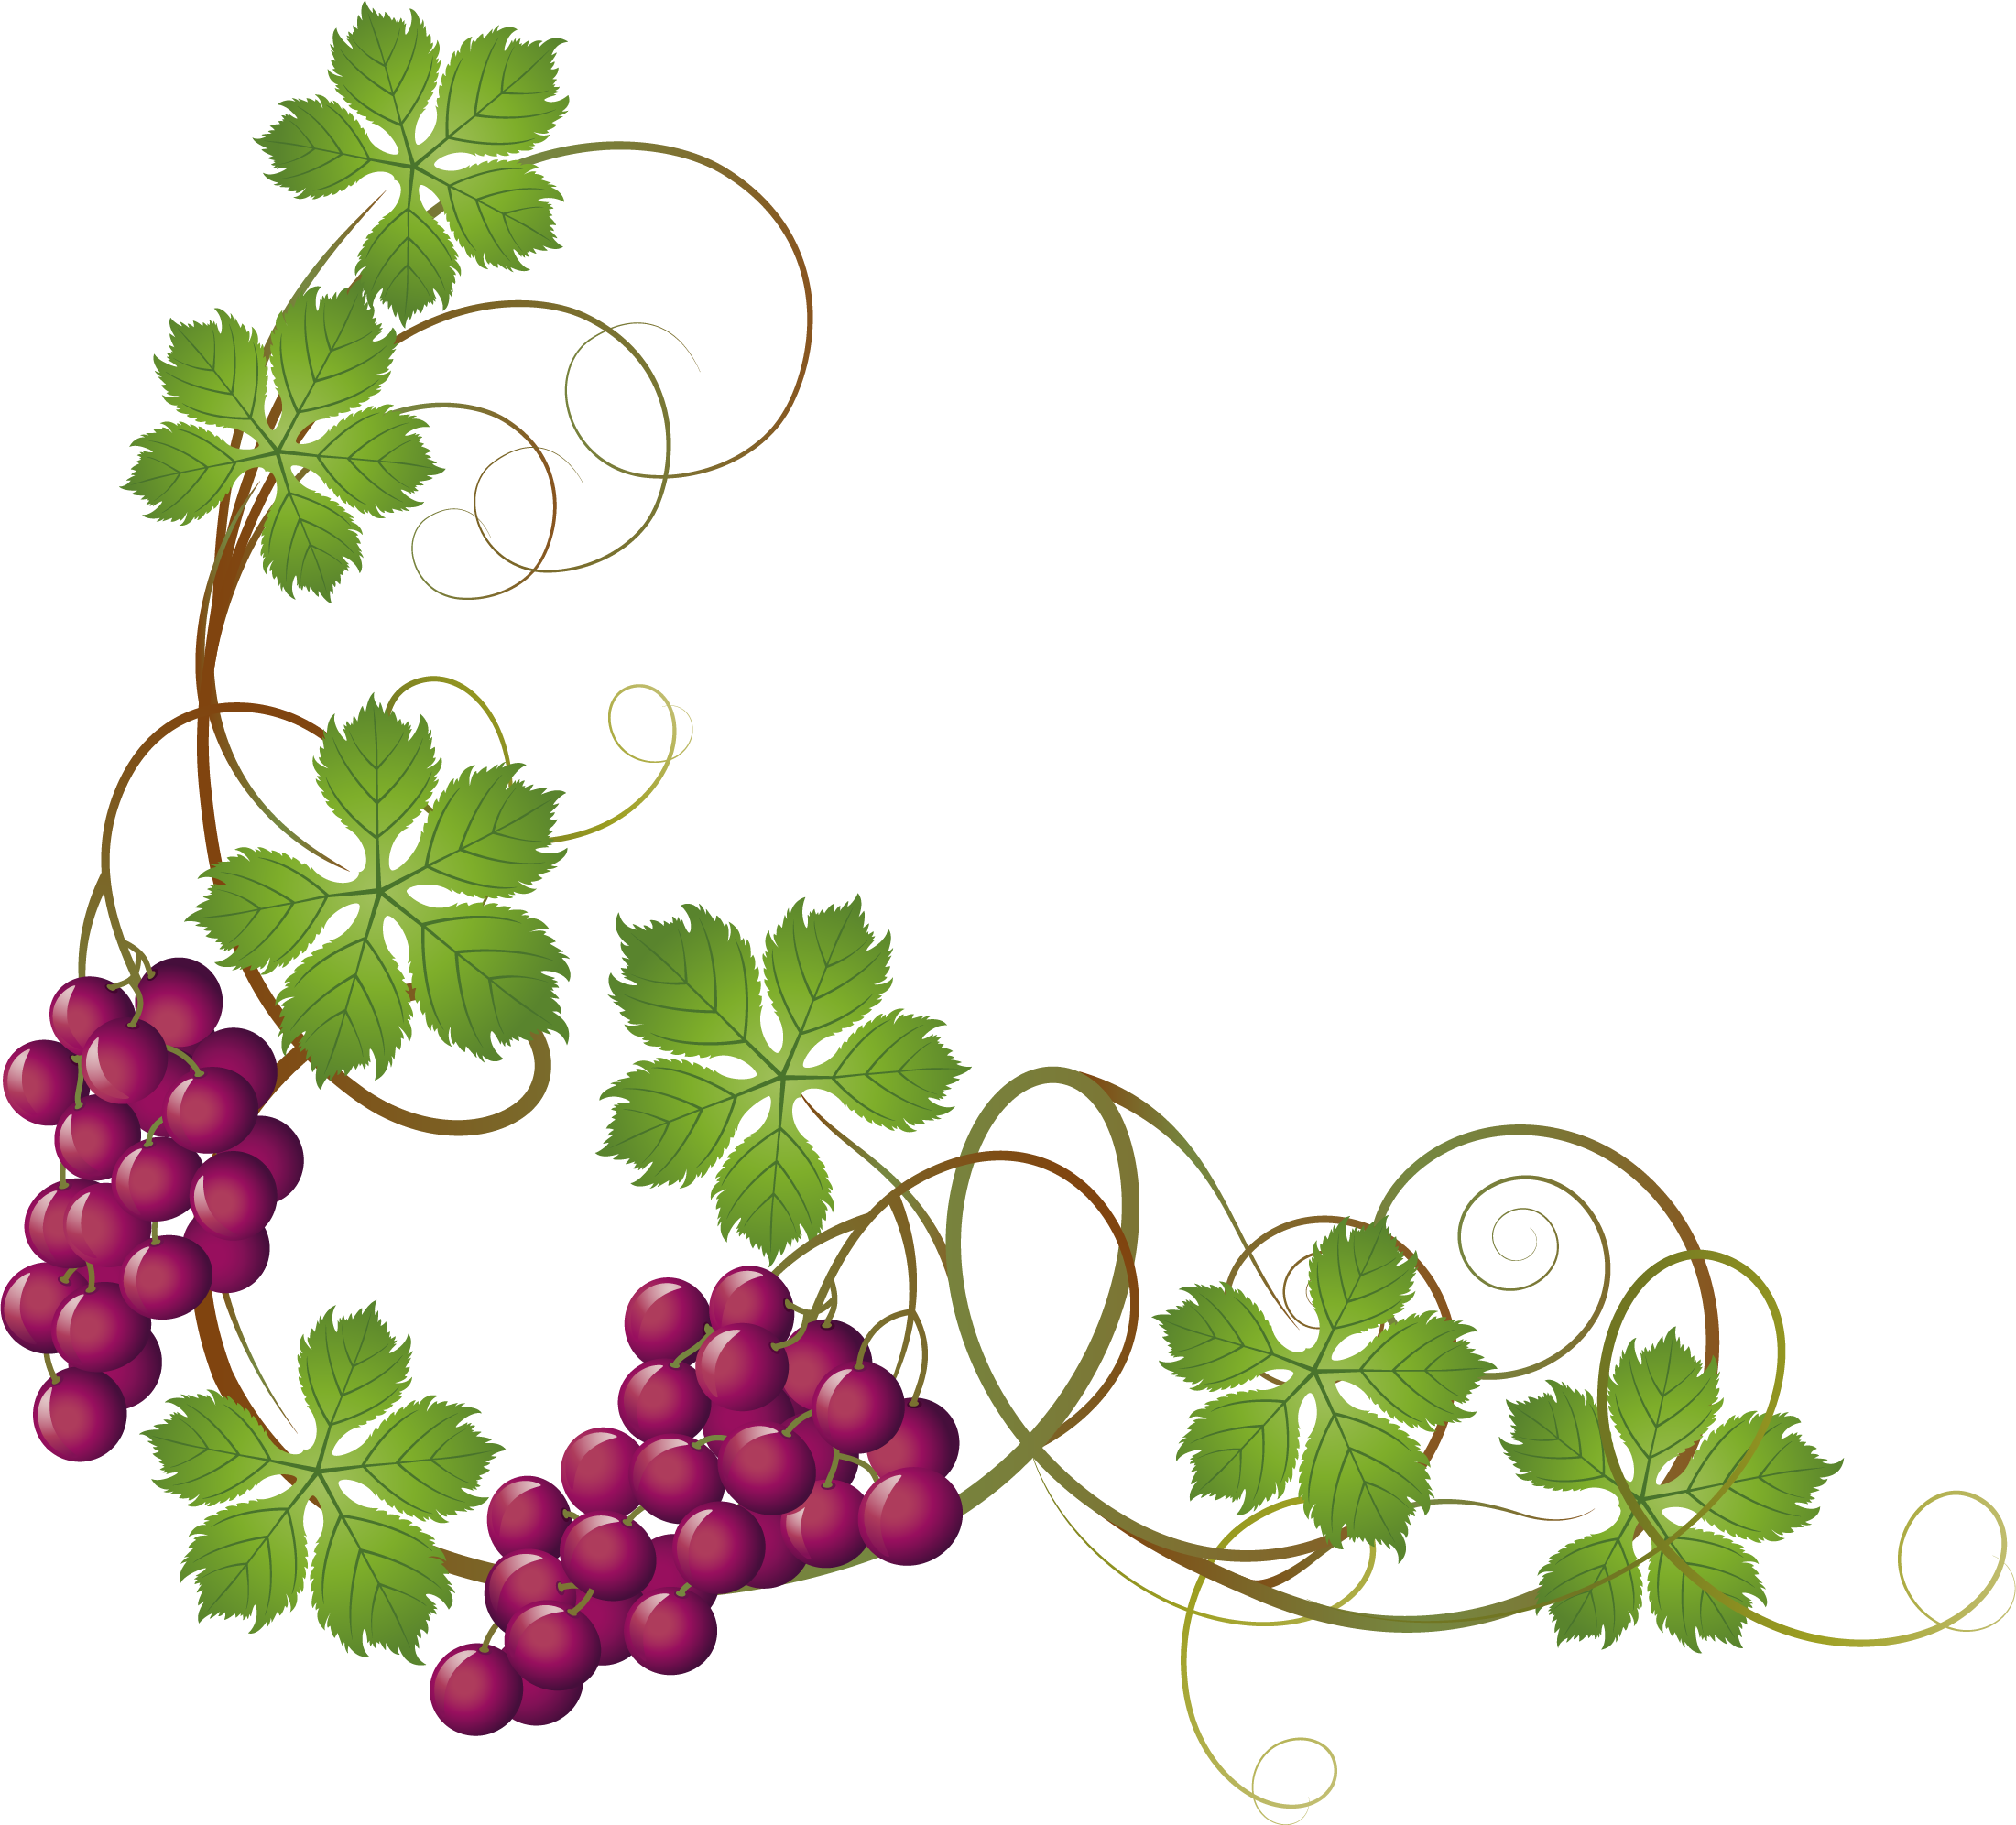 Grape Vine Border Vector at GetDrawings Free download